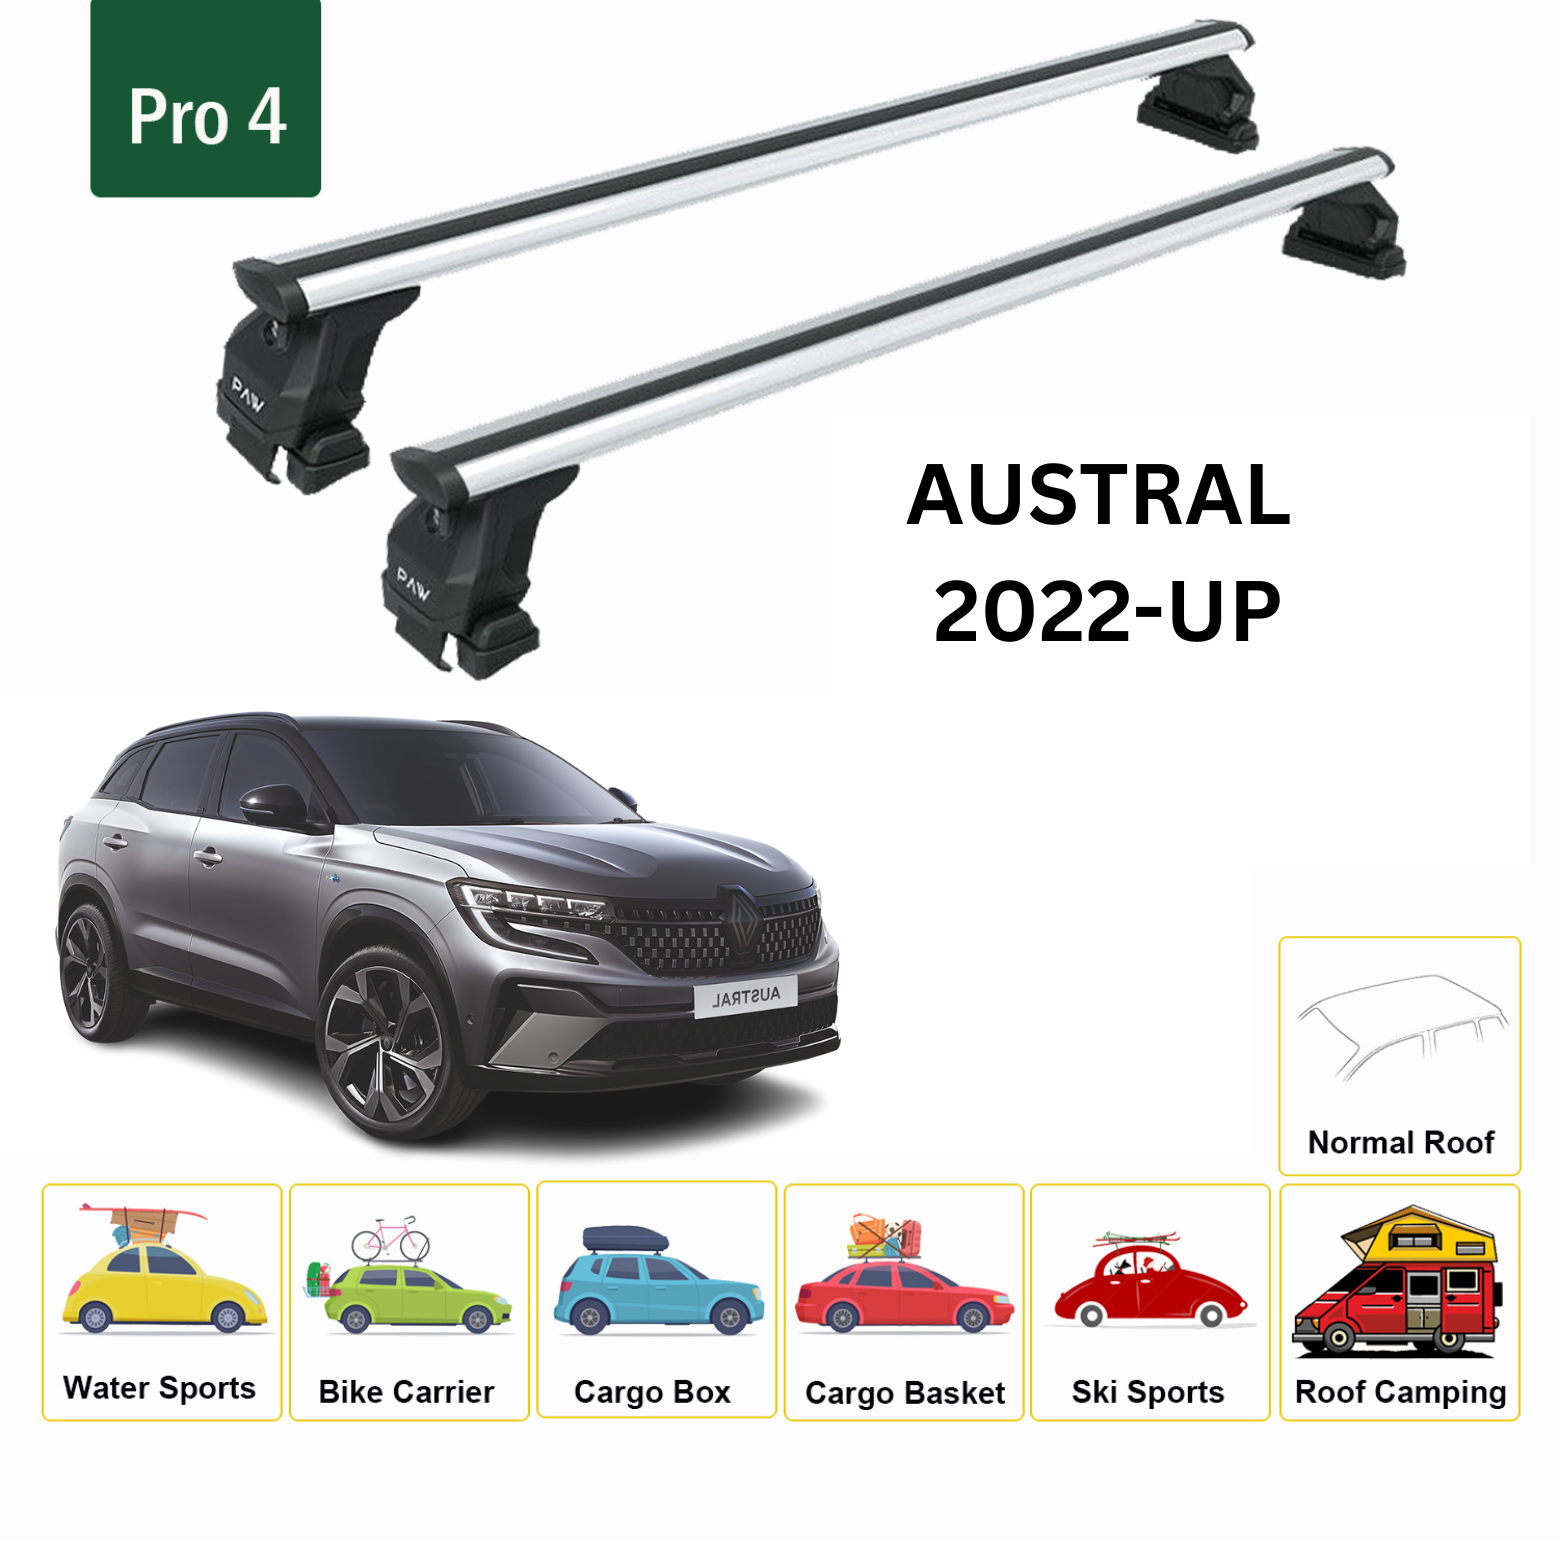 Für Renault Austral 2022-Up Dachträgersystem, Aluminium-Querstange, Metallhalterung, normales Dach, Silber - 0